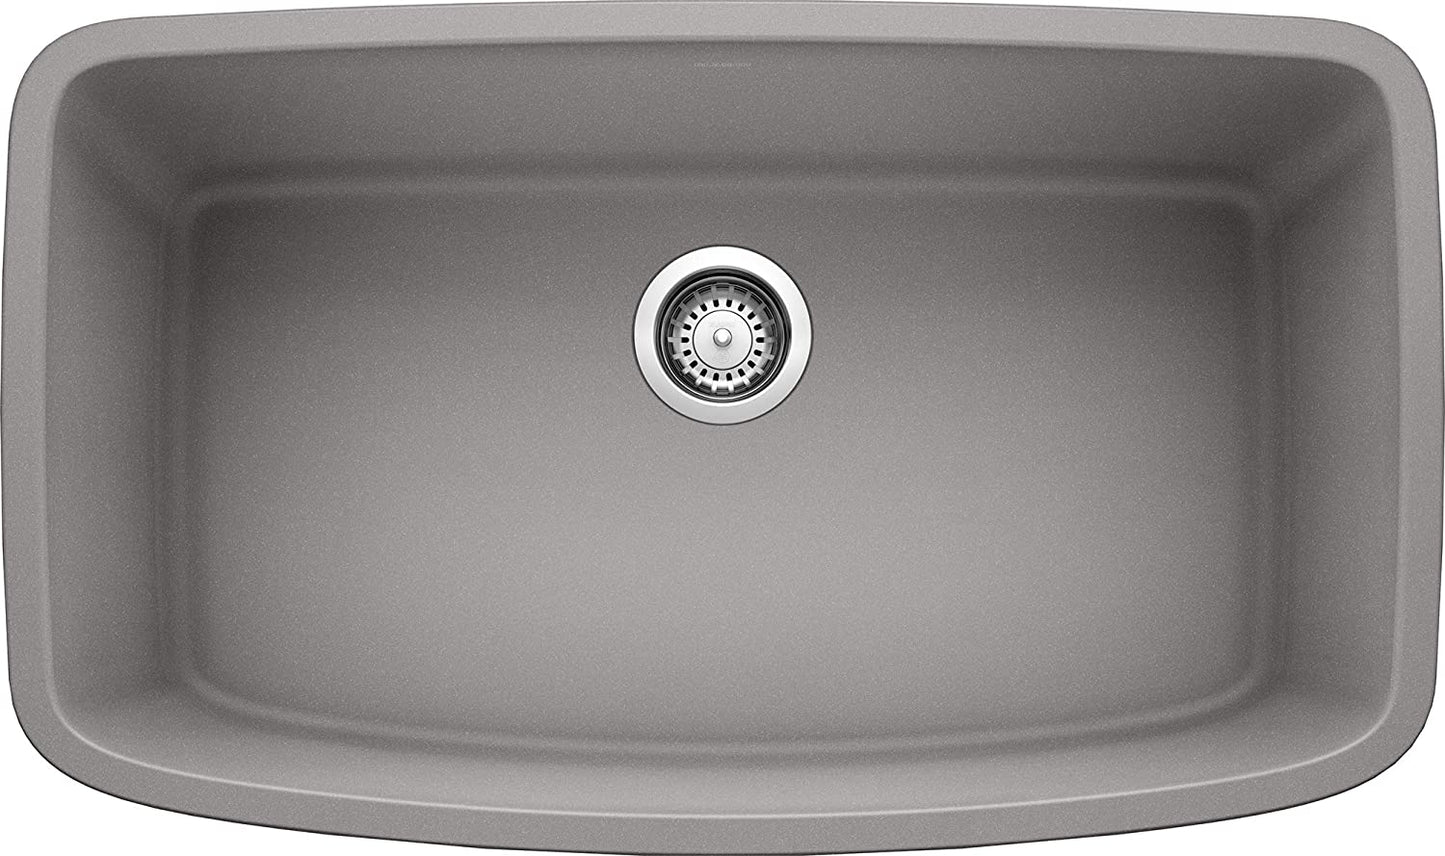 Valea Super Single Bowl Undermount Kitchen Sink, 32" X 19" - Metallic Gray